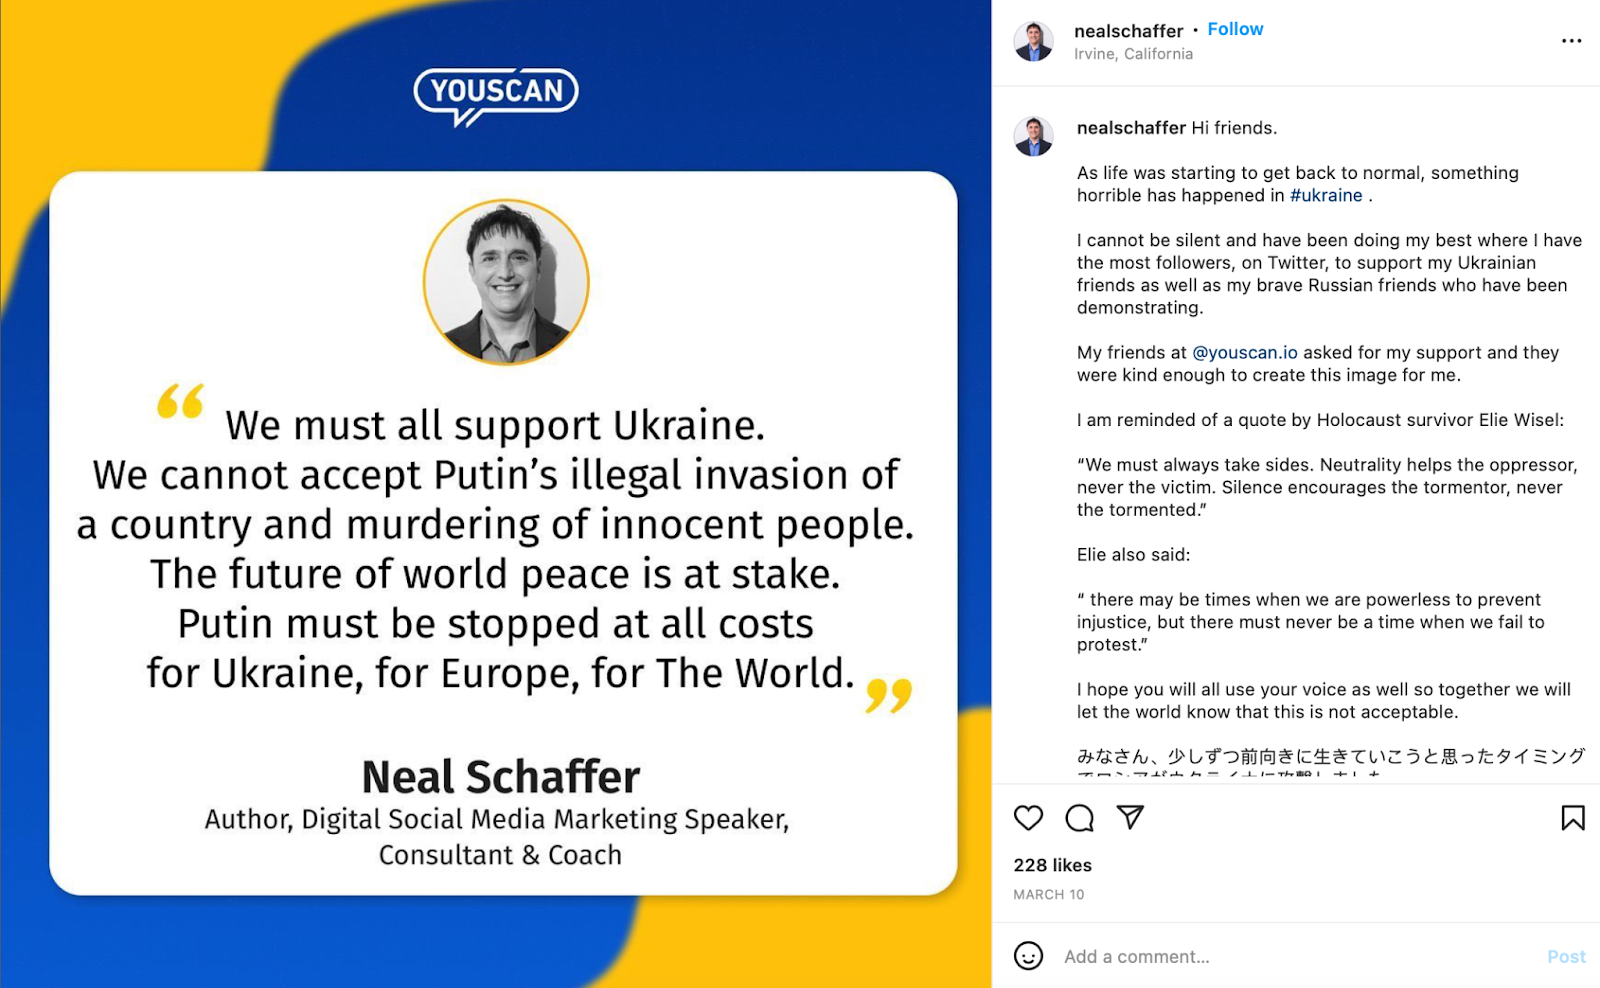 Neal Schaffer #StandWIthUkraine on Instagram